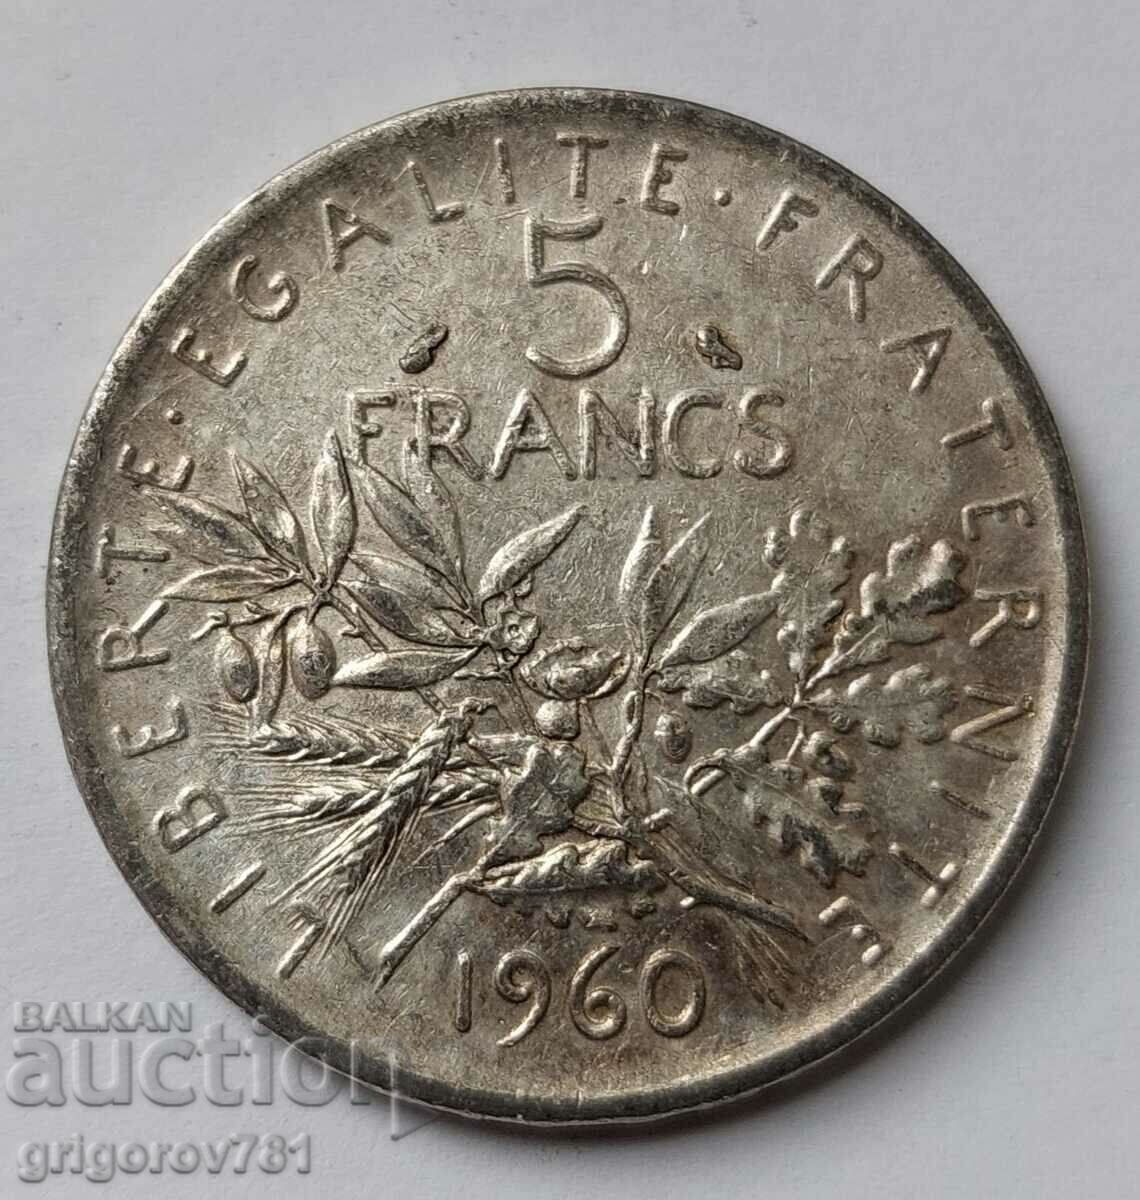 5 Φράγκα Ασήμι Γαλλία 1960 - Ασημένιο νόμισμα #12